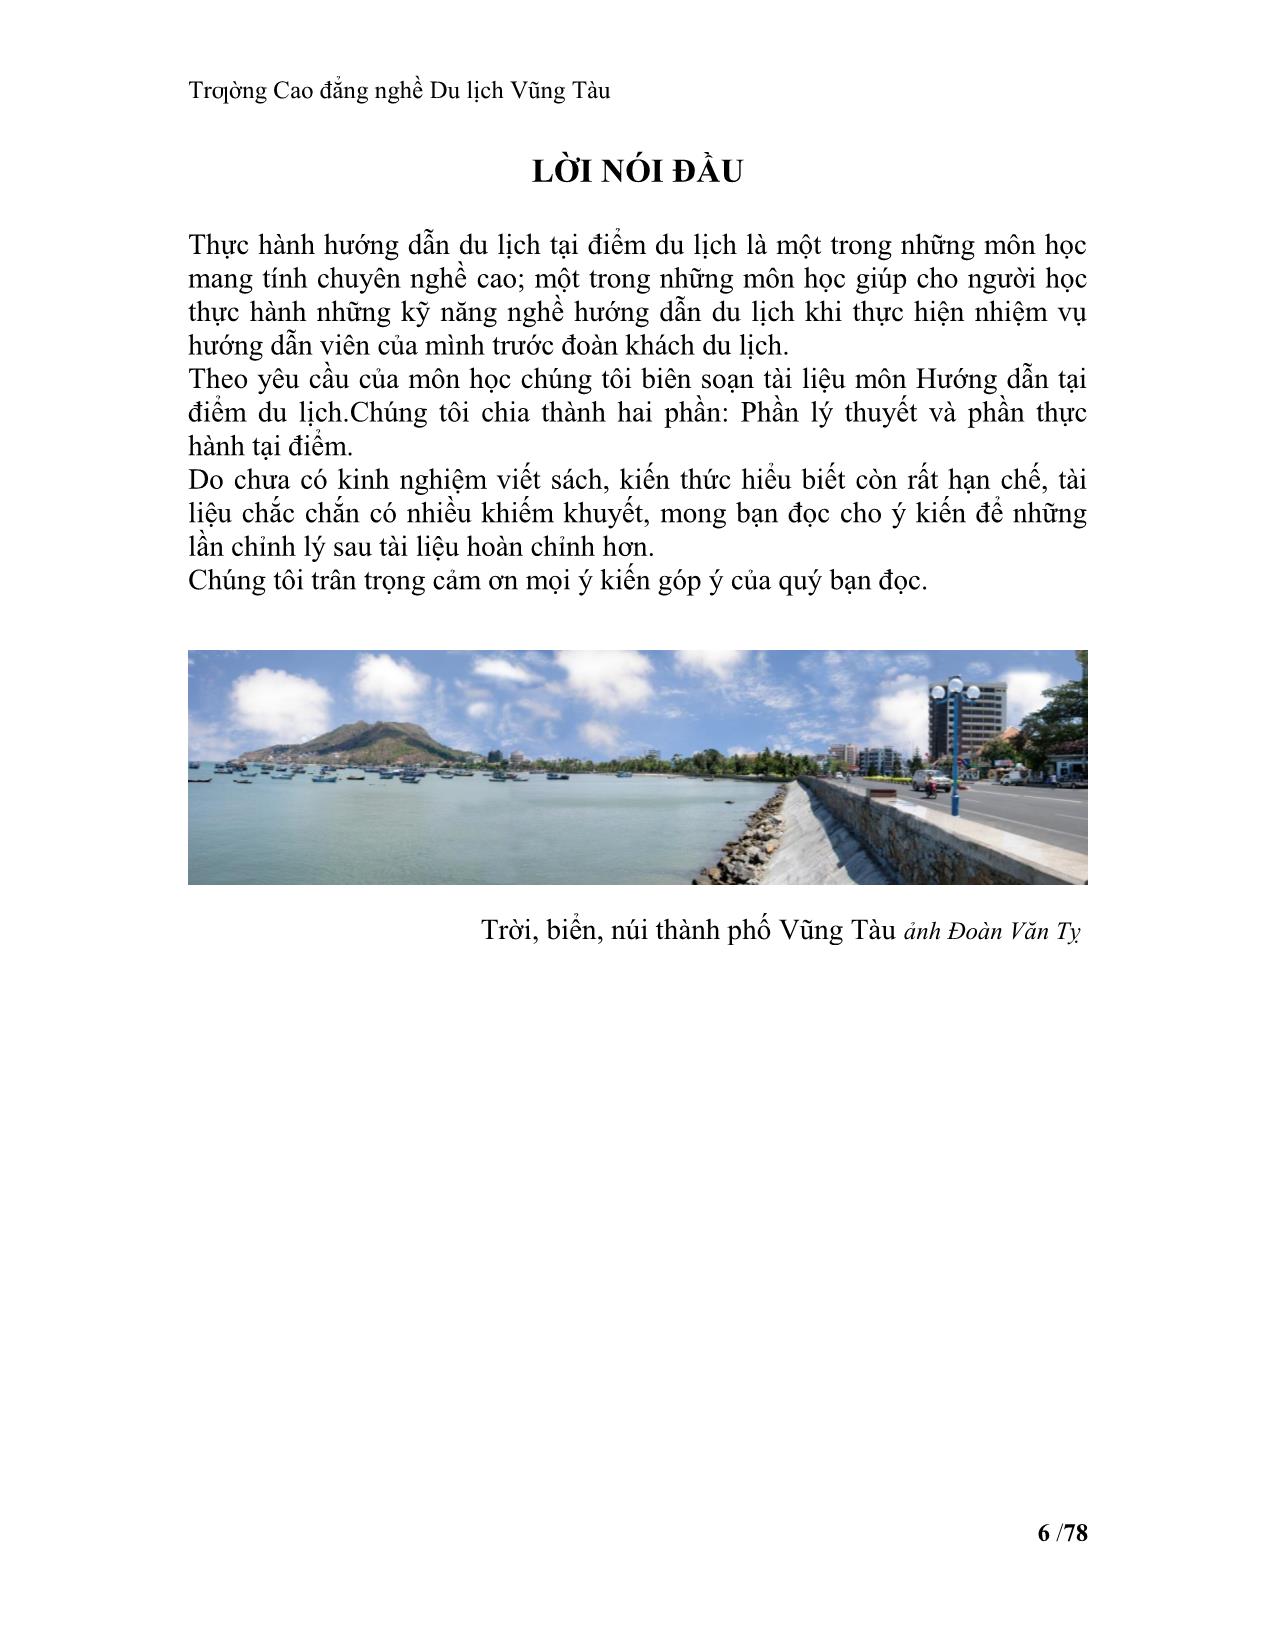 Giáo trình Hướng dẫn tại điểm du lịch (Phần lý thuyết) trang 6